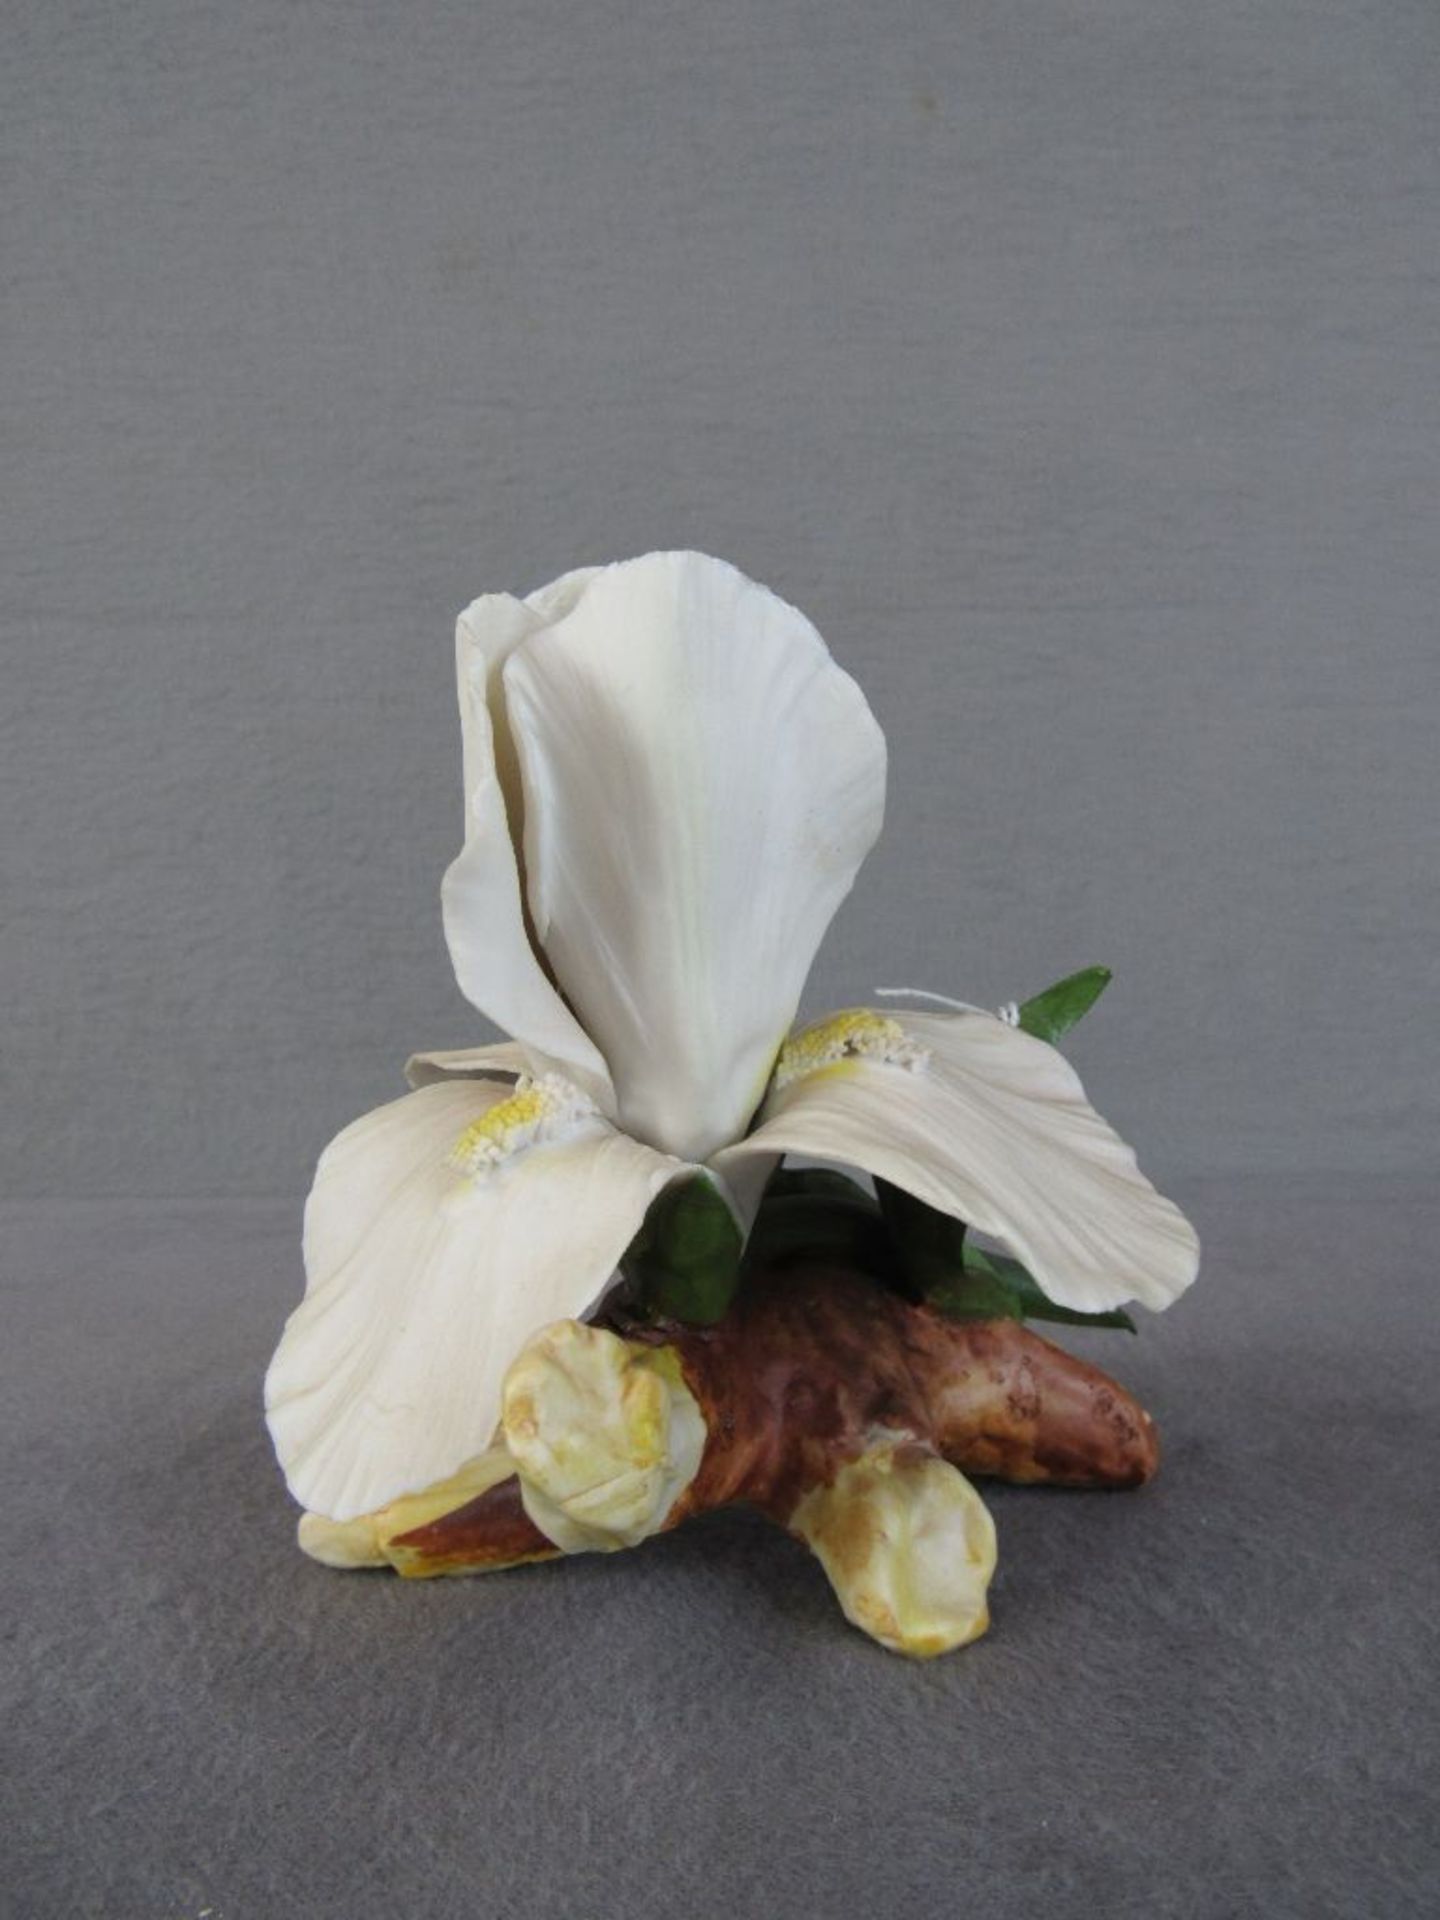 Skulptur Blume sehr deteil getreu gearbeitet Bisquitporzellan minimale Beschädigungen können